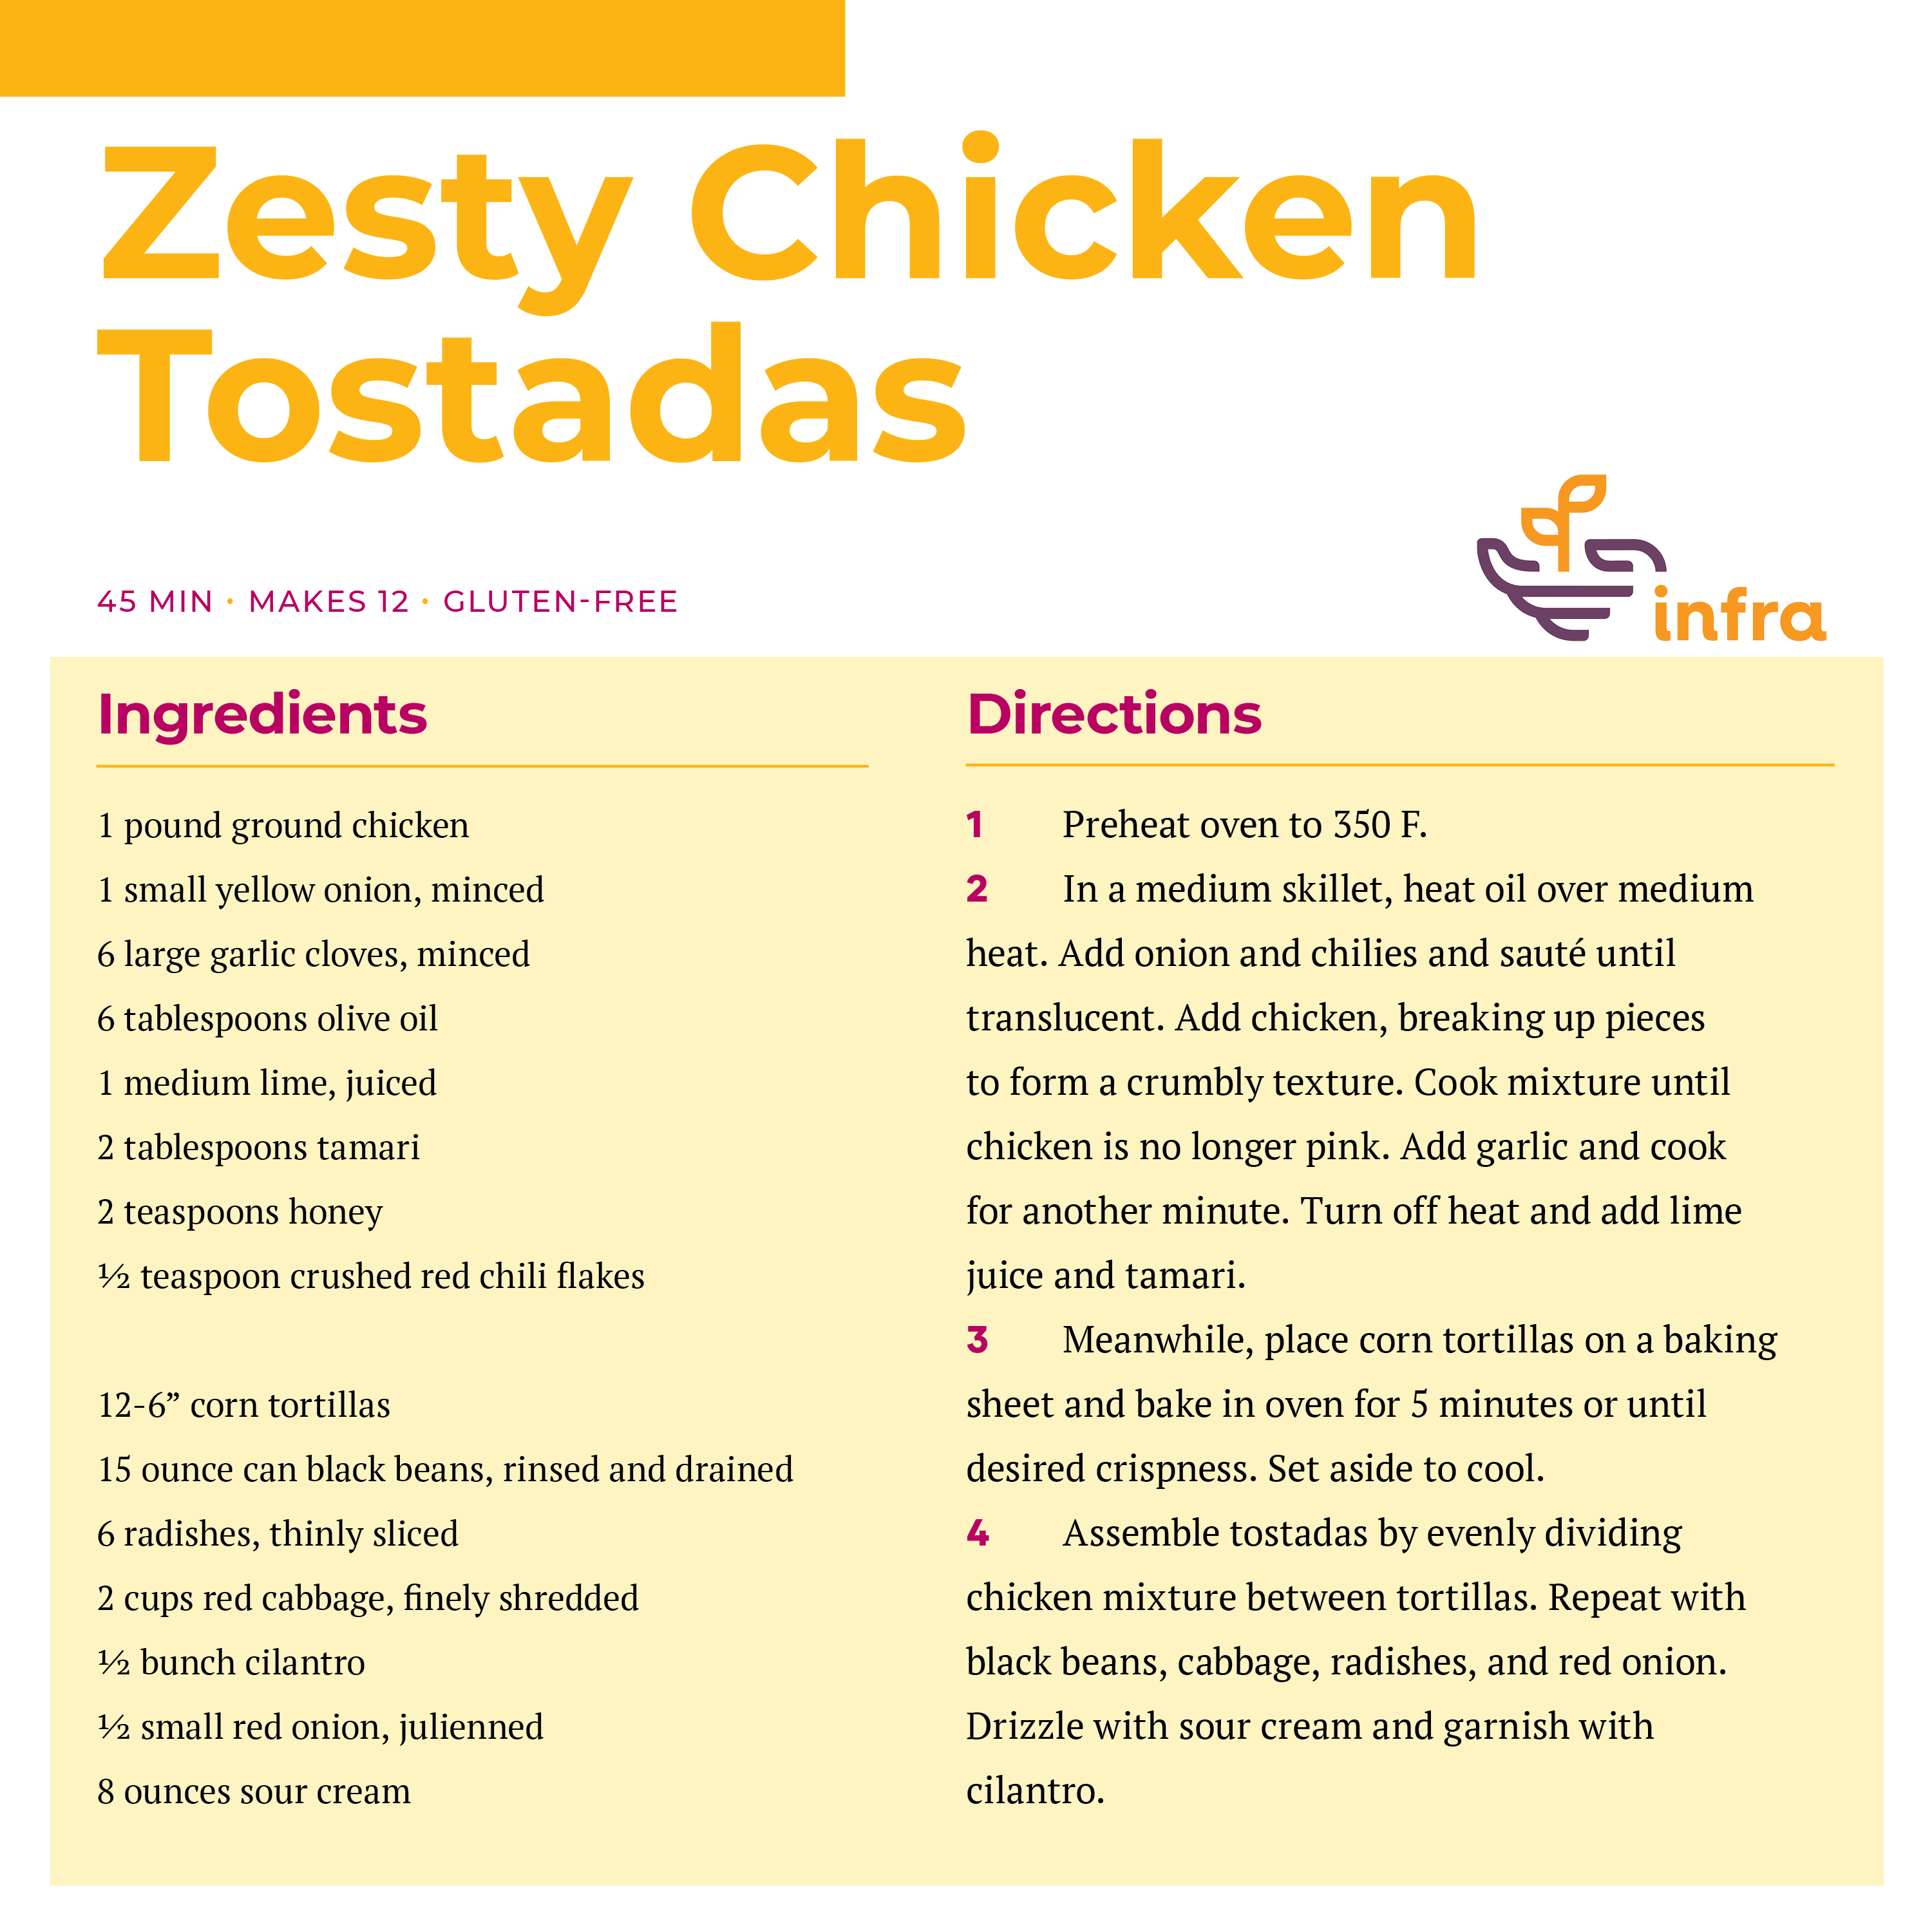 Zesty Chicken Tostadas